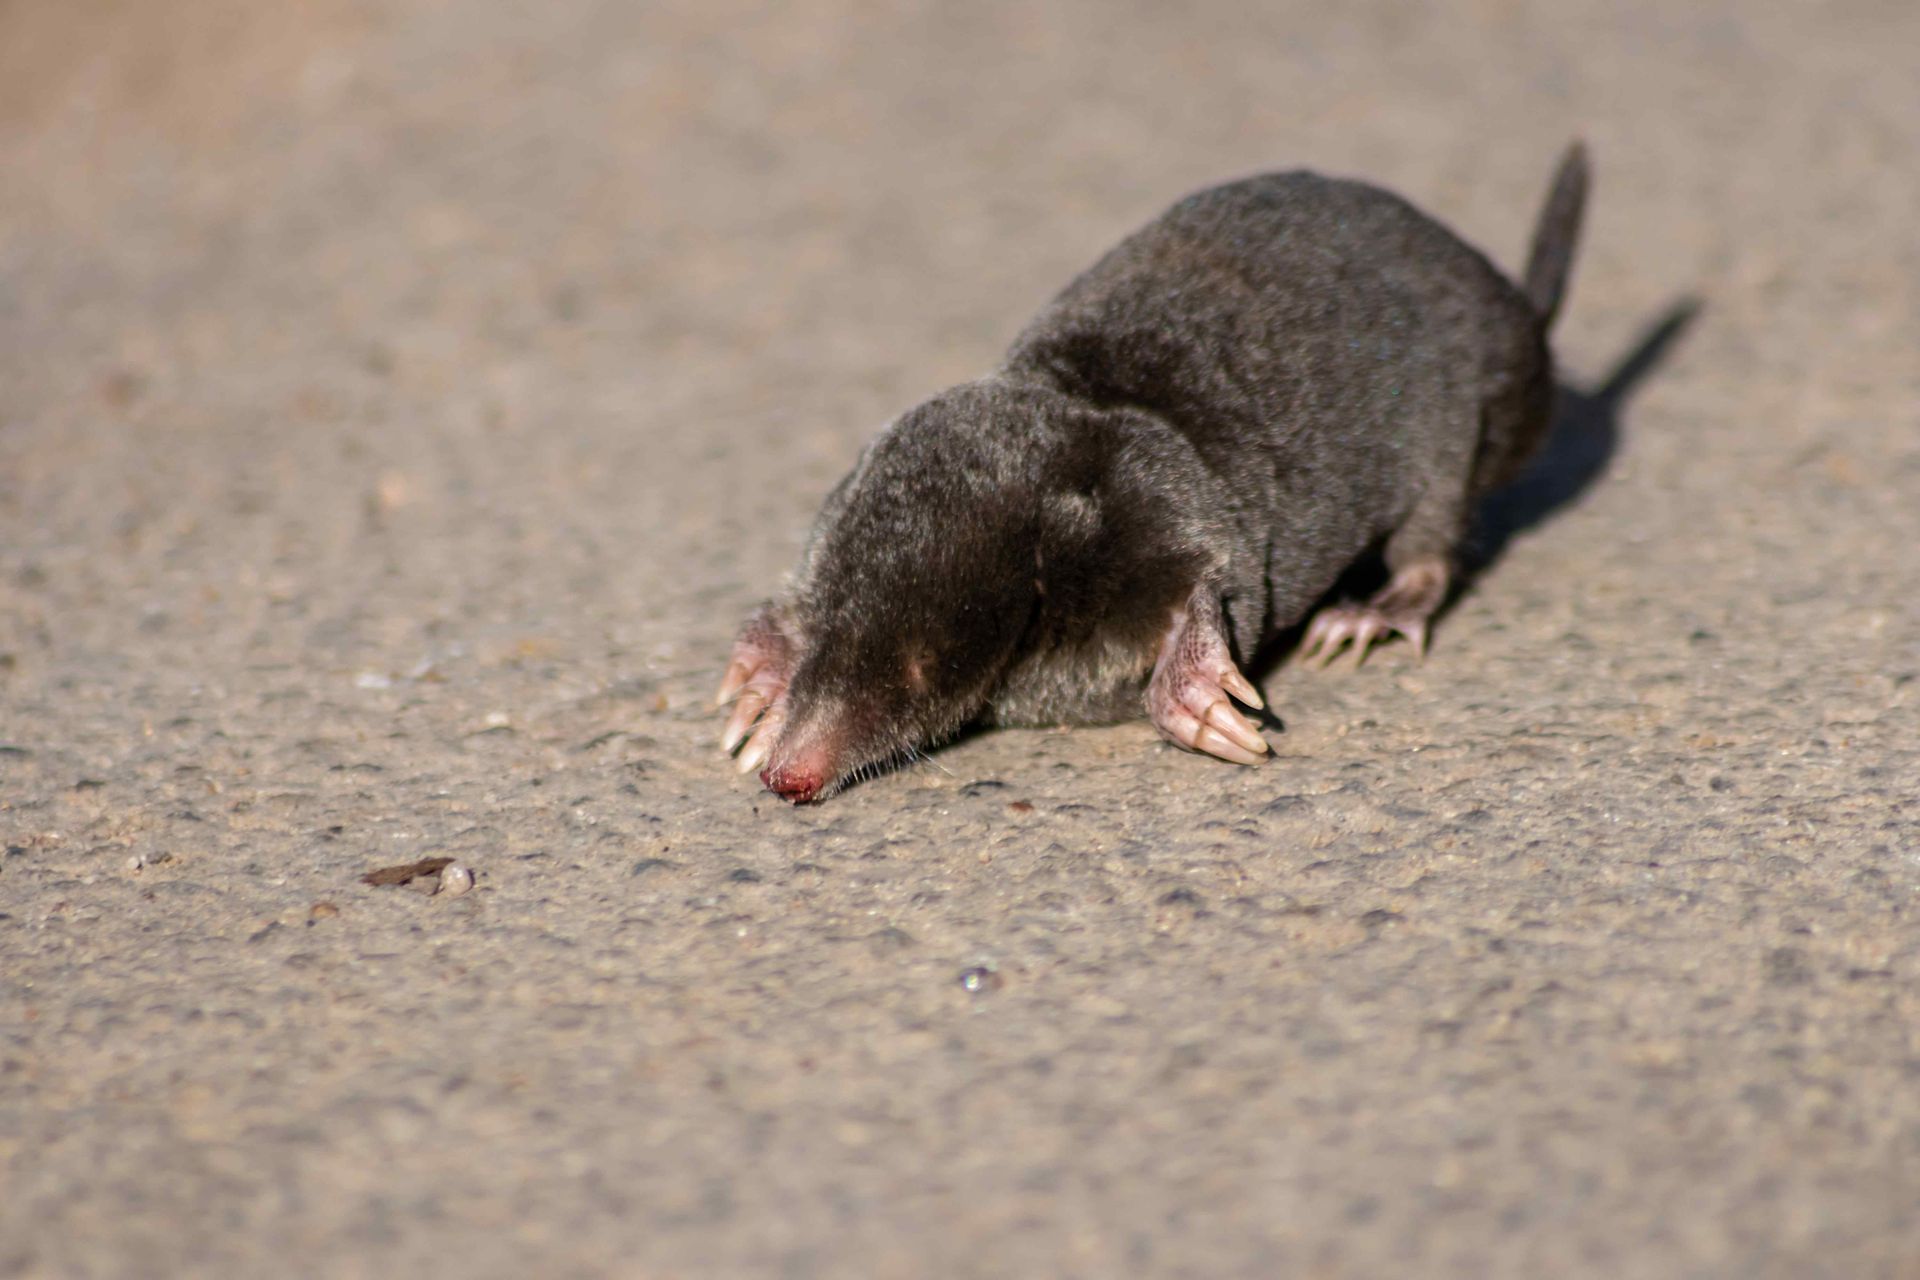 mole crawling on concrete